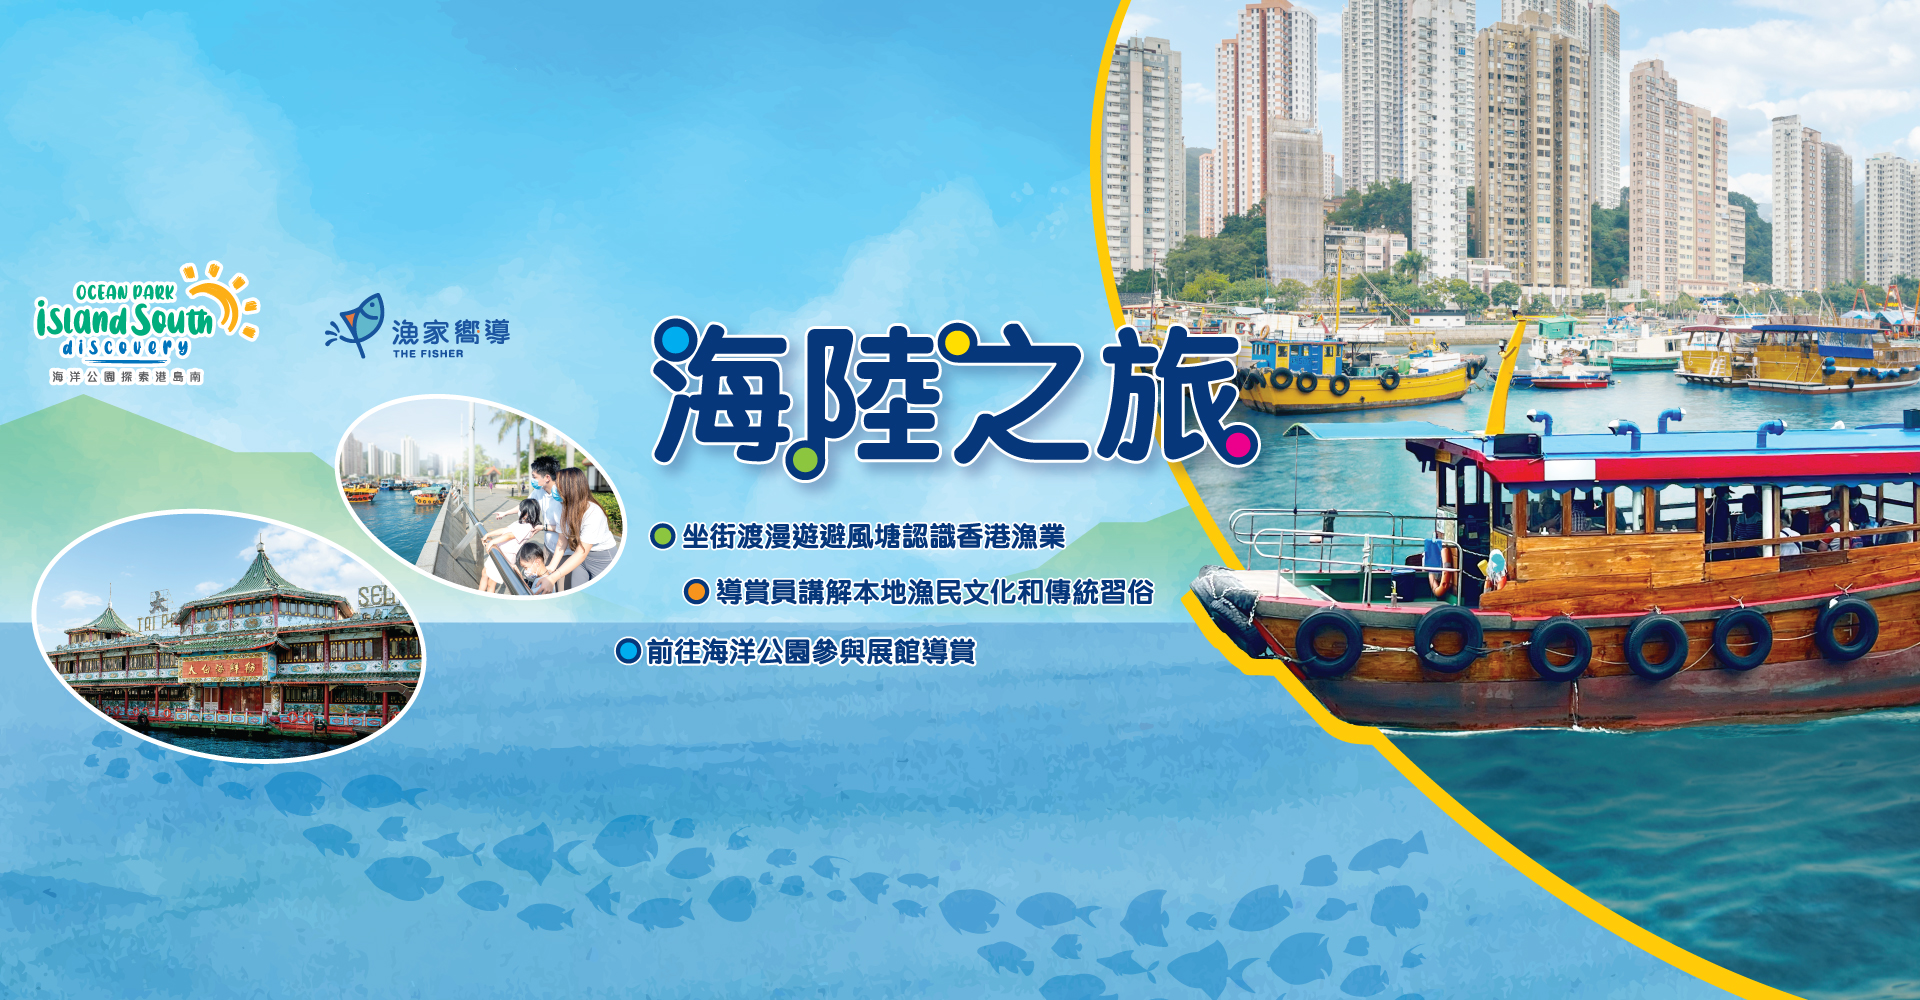 http://media.oceanpark.com.hk/files/s3fs-public/land-sea-guided-tour-innerpage-banner-desktop-tc.jpg